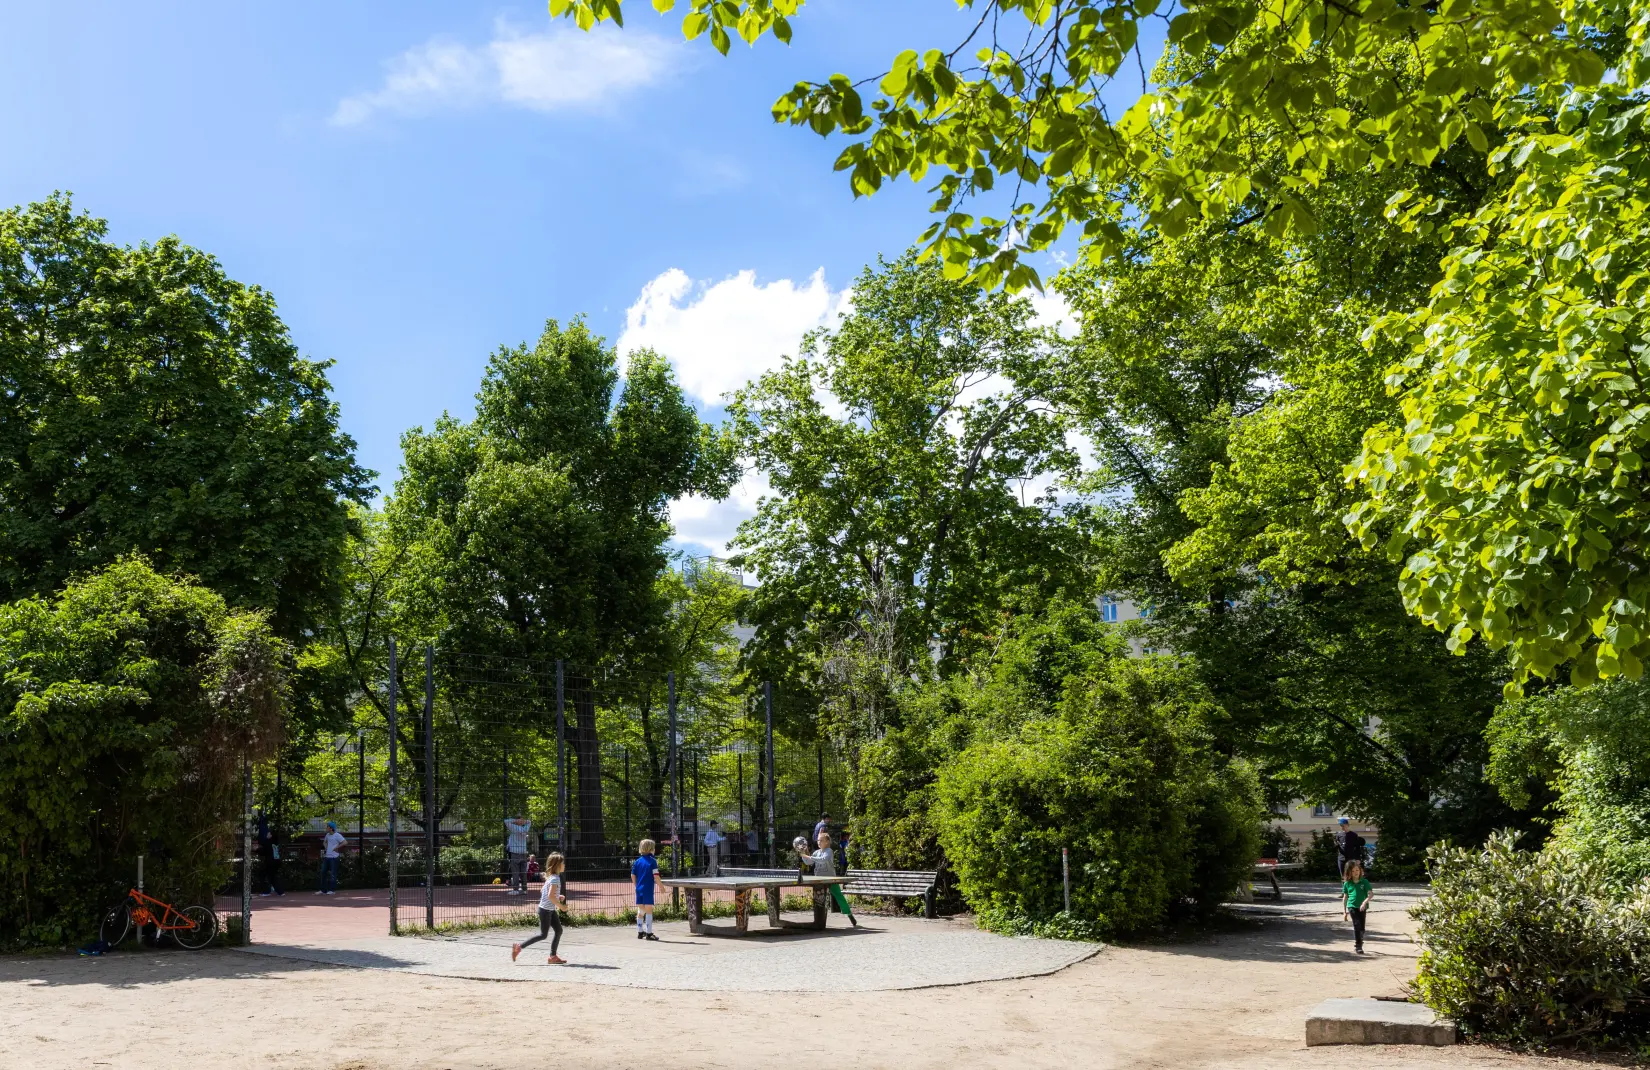 The park in Helmholzplatz